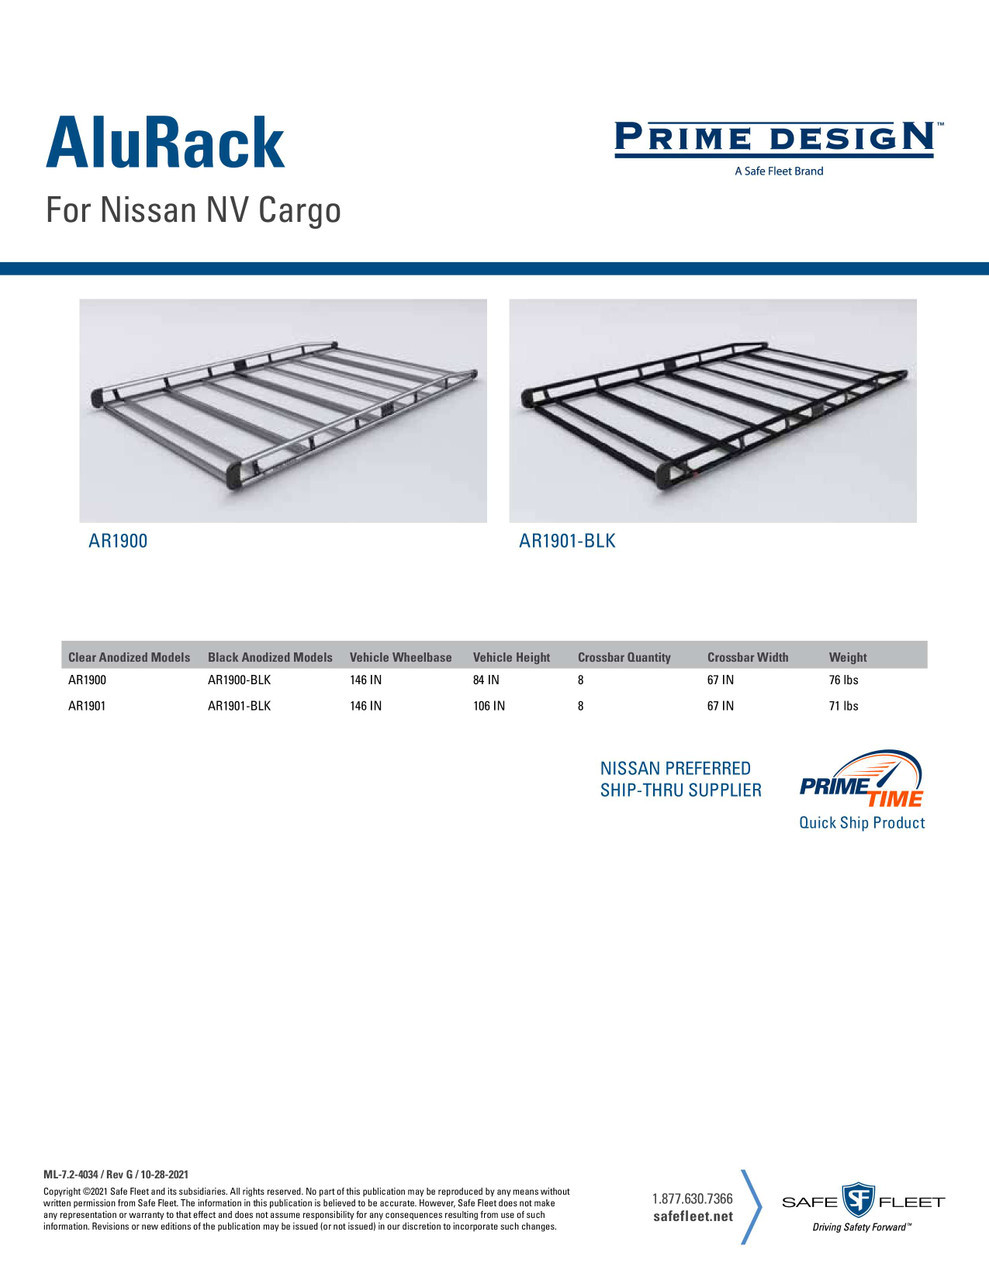 LadderProducts.com | Prime Design AluRack Nissan NV Cargo AR1901